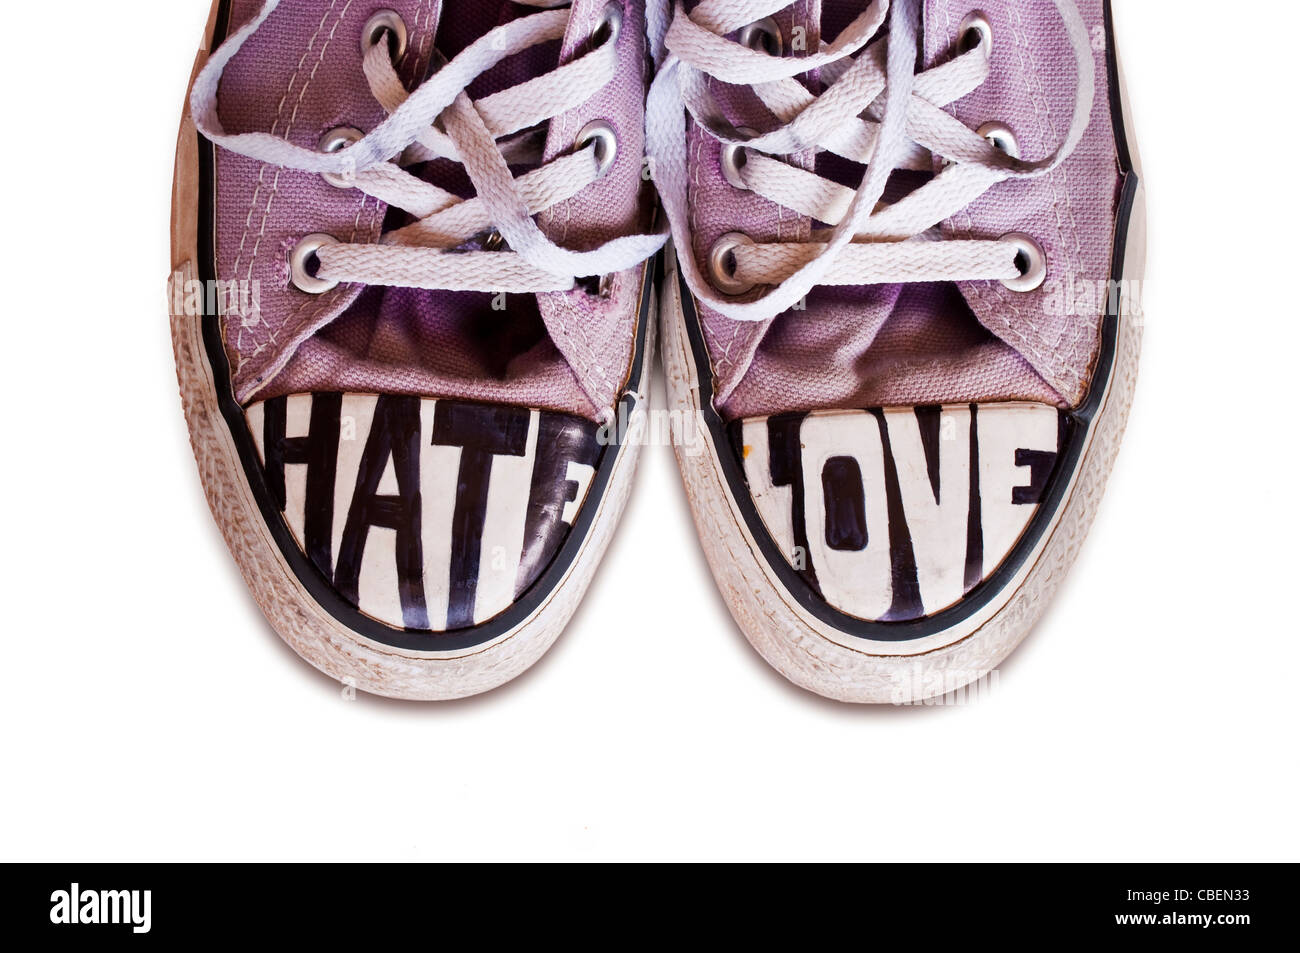 Jugendliche, die mit den Worten Converse Schuhe angepasst Hass und Liebe auf weißem Hintergrund Stockfoto